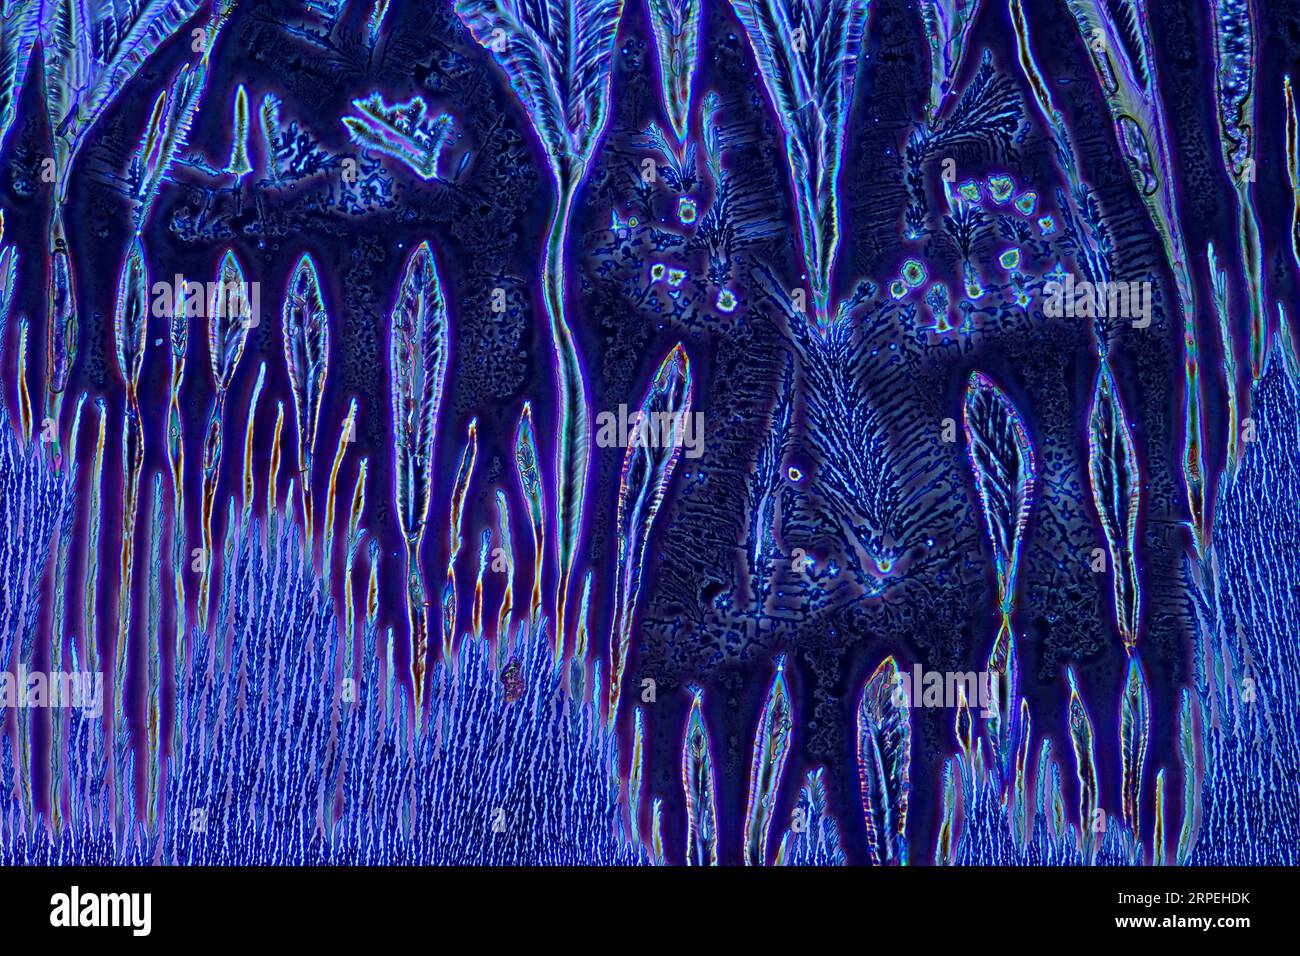 L'image présente une sauce de soja cristallisée photographiée au microscope en lumière polarisée et en contraste de phase à un grossissement de 100X. Banque D'Images